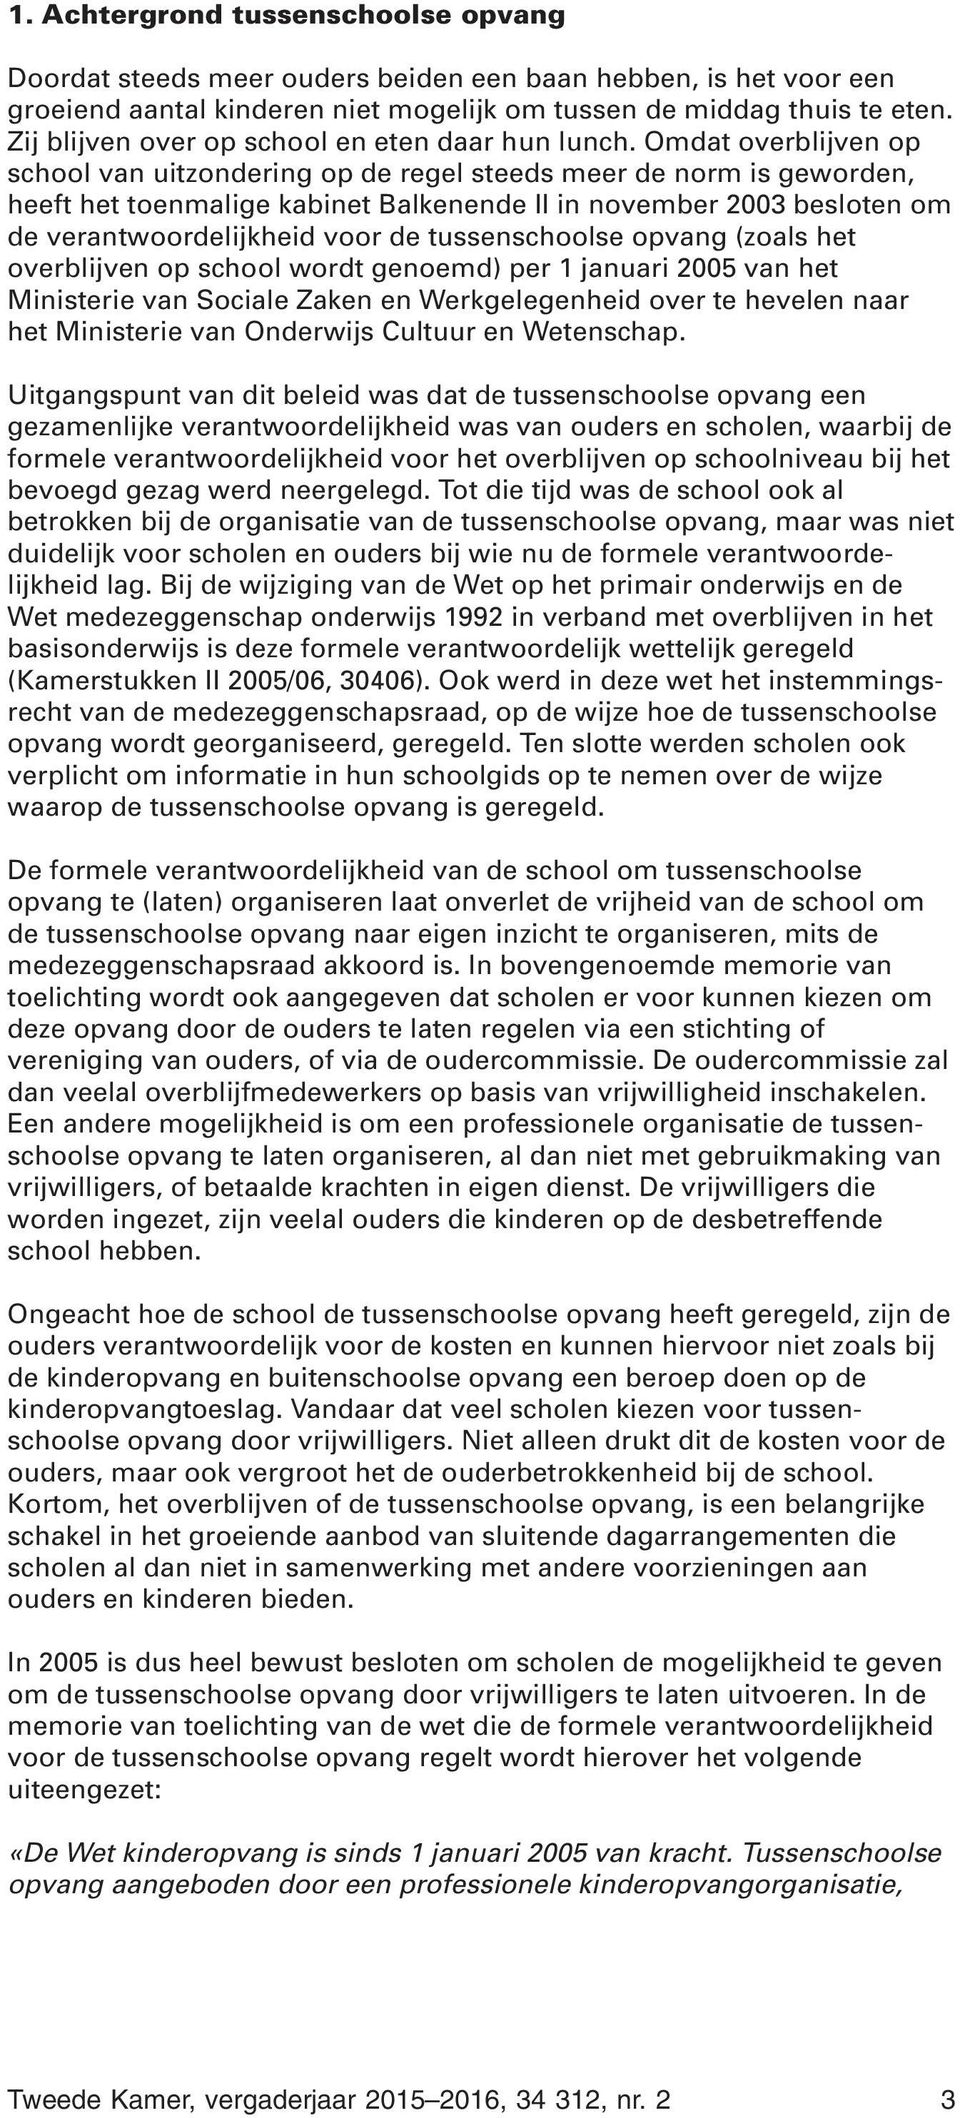 Omdat overblijven op school van uitzondering op de regel steeds meer de norm is geworden, heeft het toenmalige kabinet Balkenende II in november 2003 besloten om de verantwoordelijkheid voor de